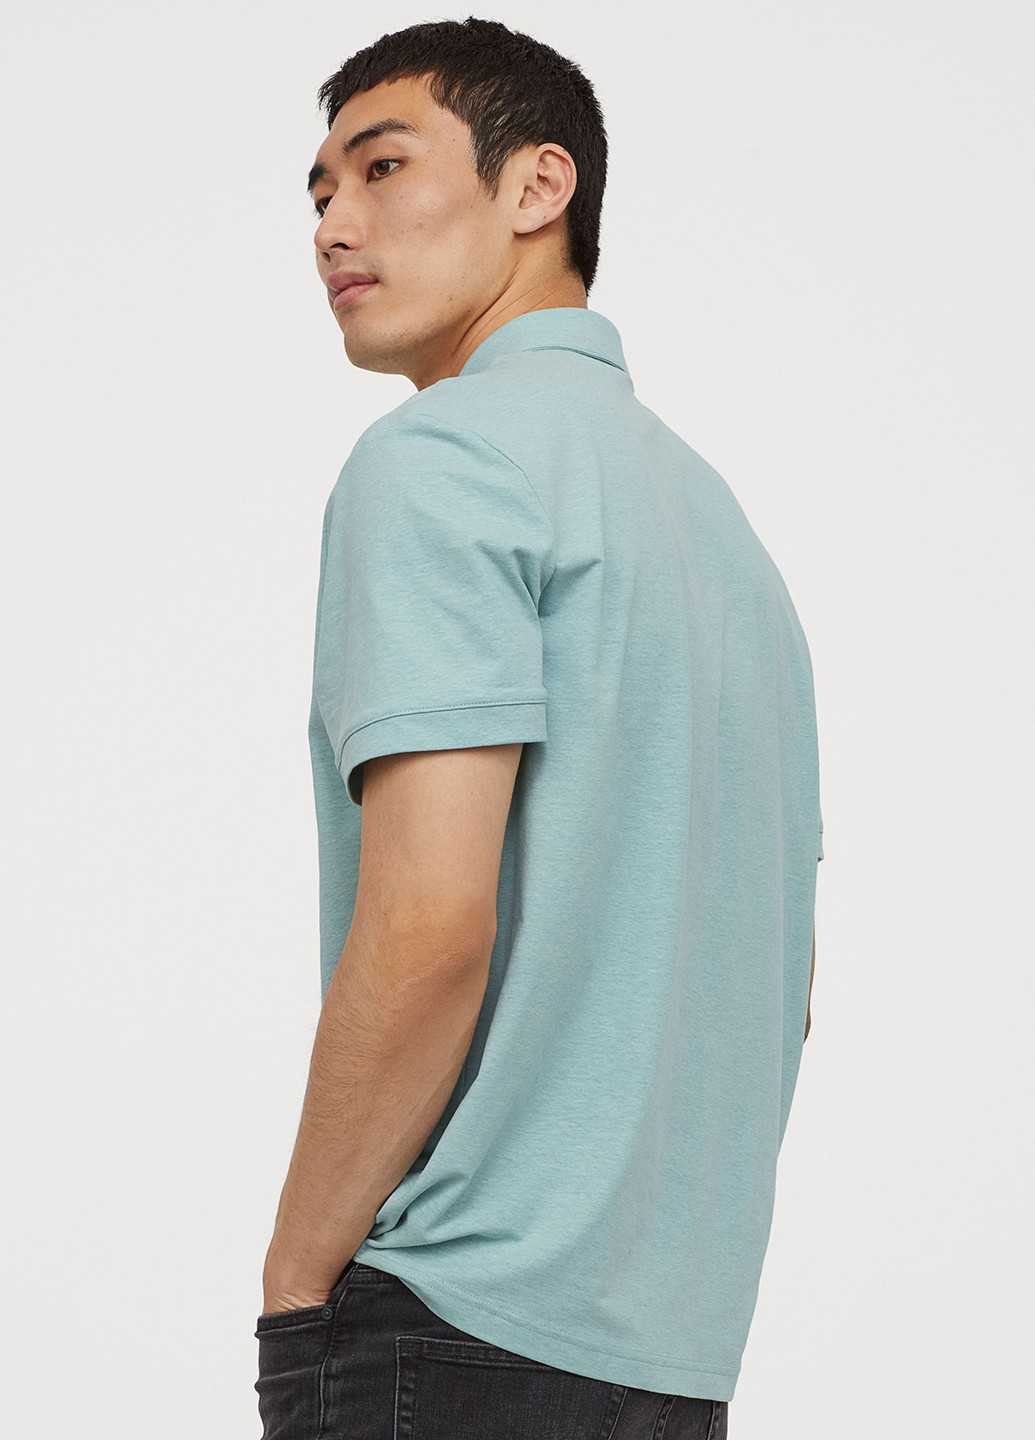 Бирюзовая футболка-поло для мужчин H&M меланжевая